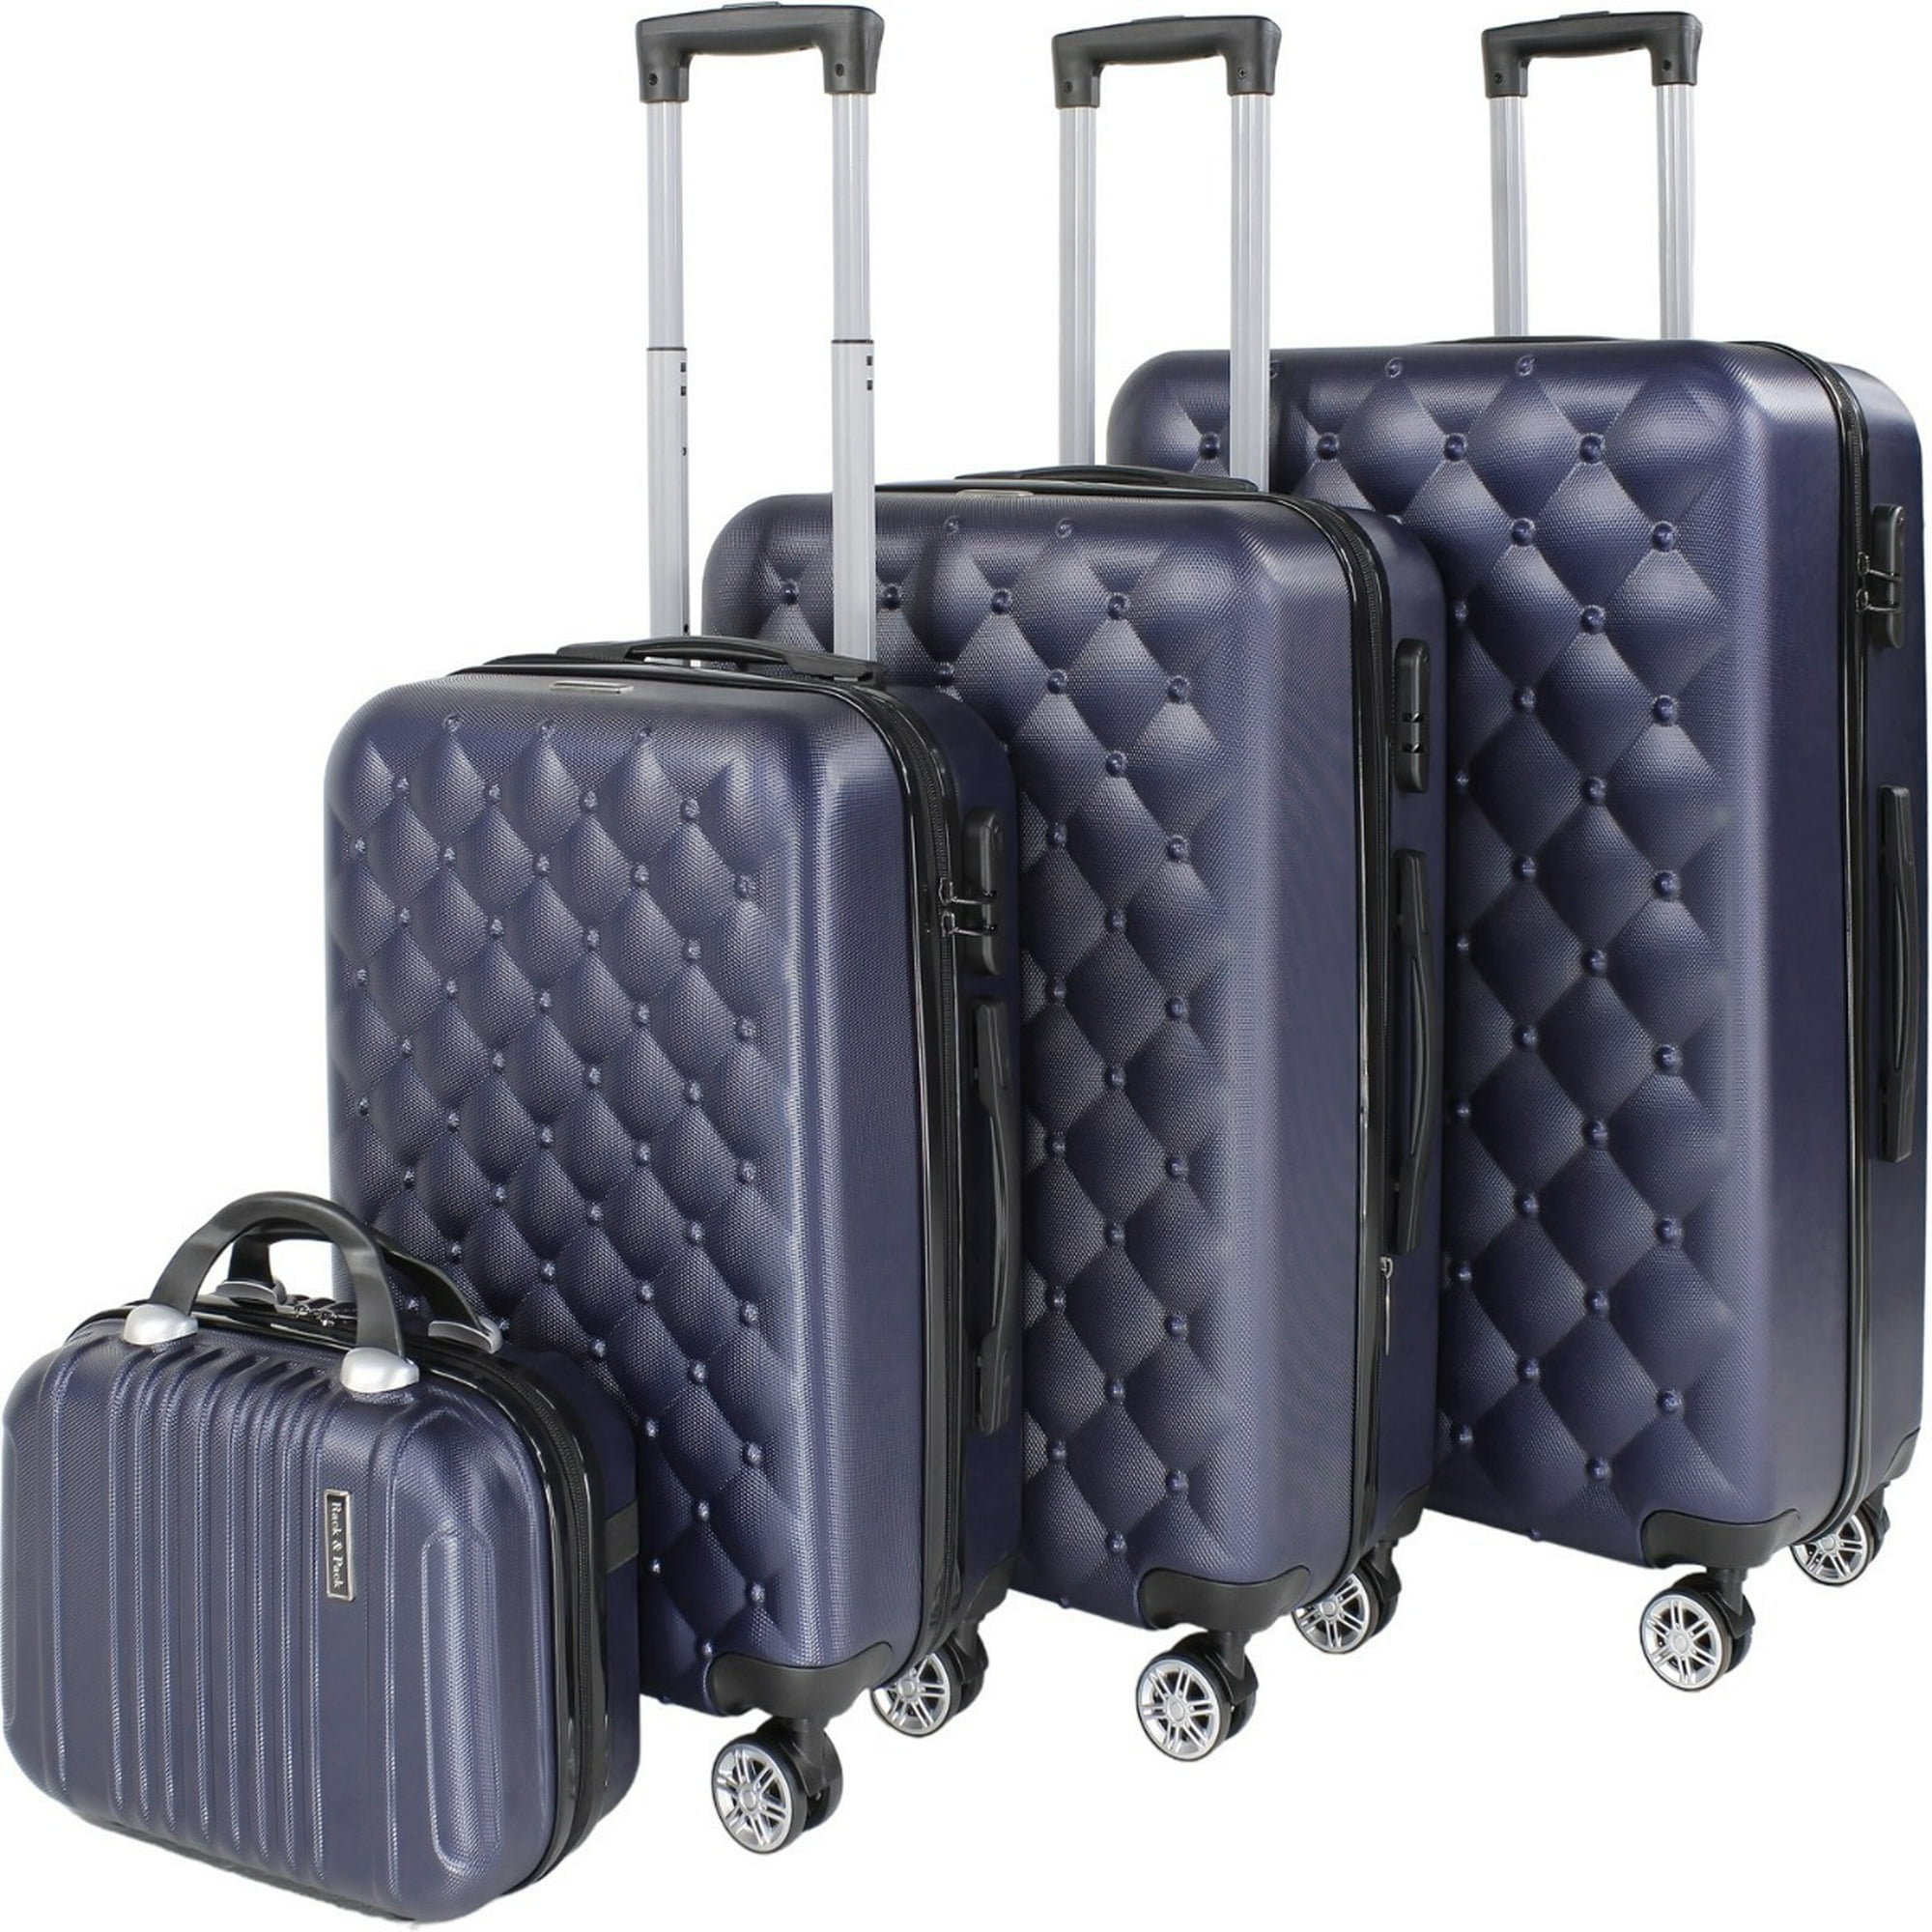 Juego de maletas de viaje rigidas Rack and Pack por $1,739 en Walmart